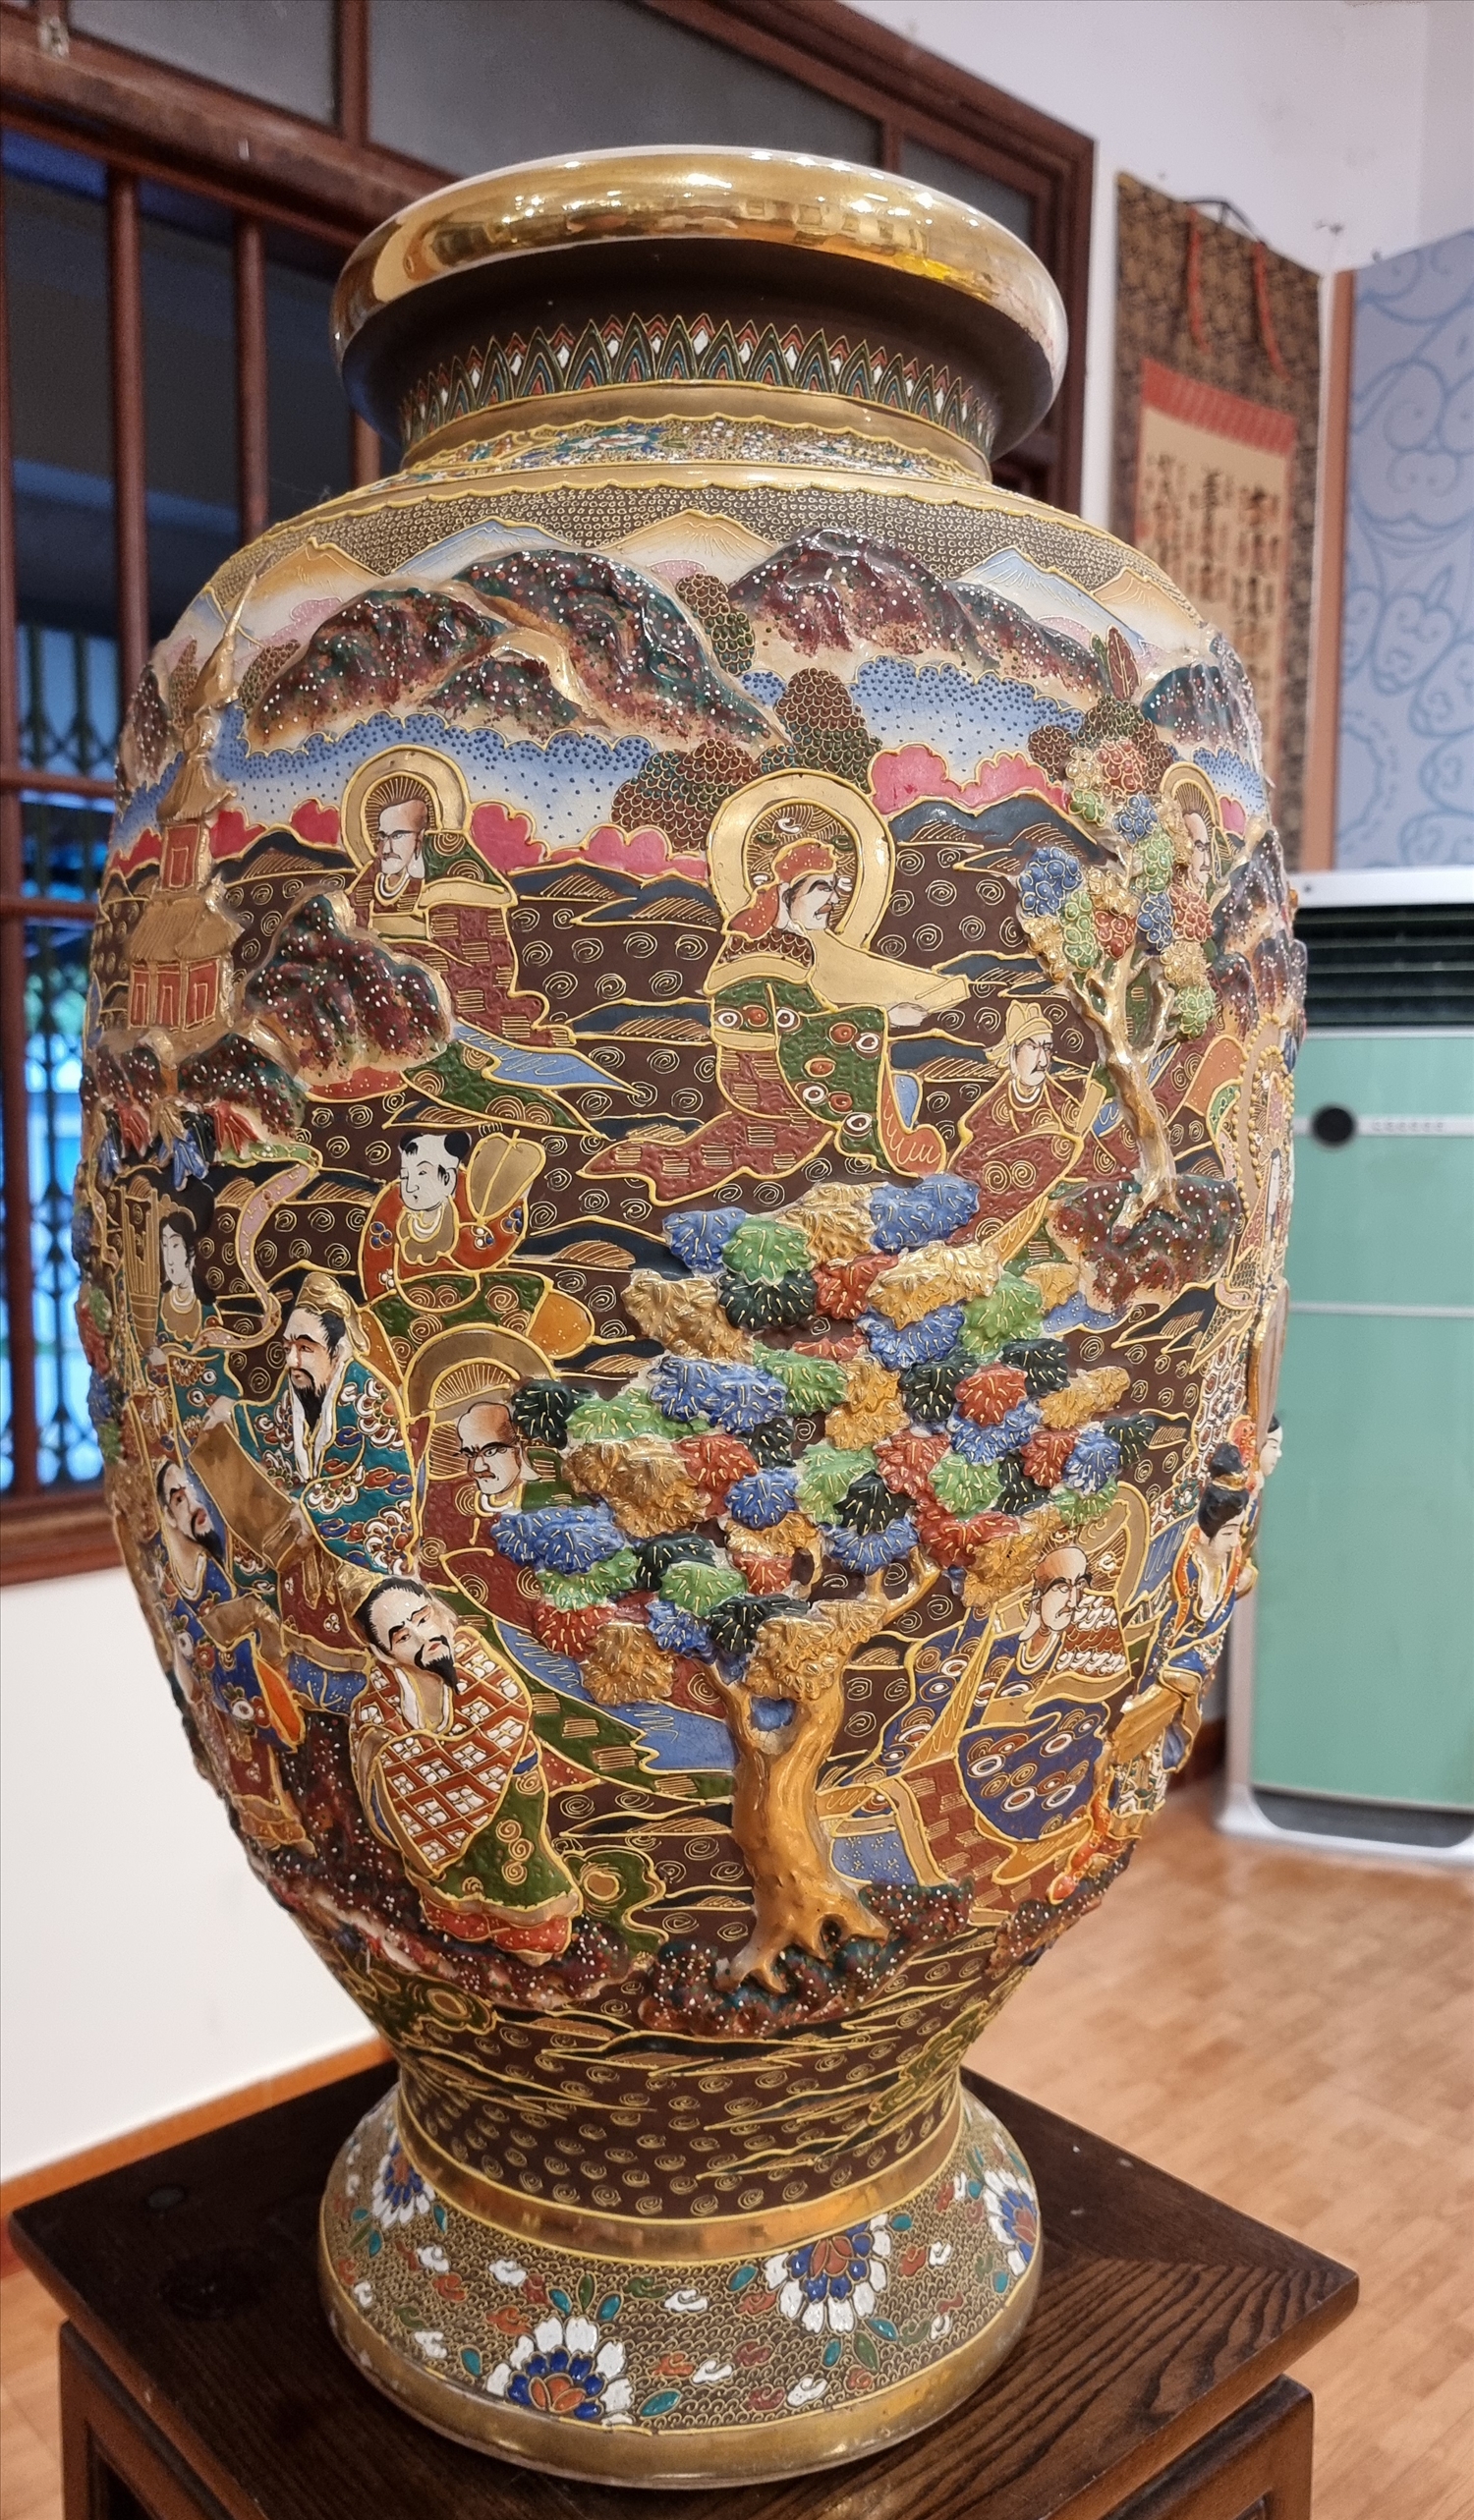 Dấu ấn Phật giáo trên gốm cổ Satsuma - Nhật Bản